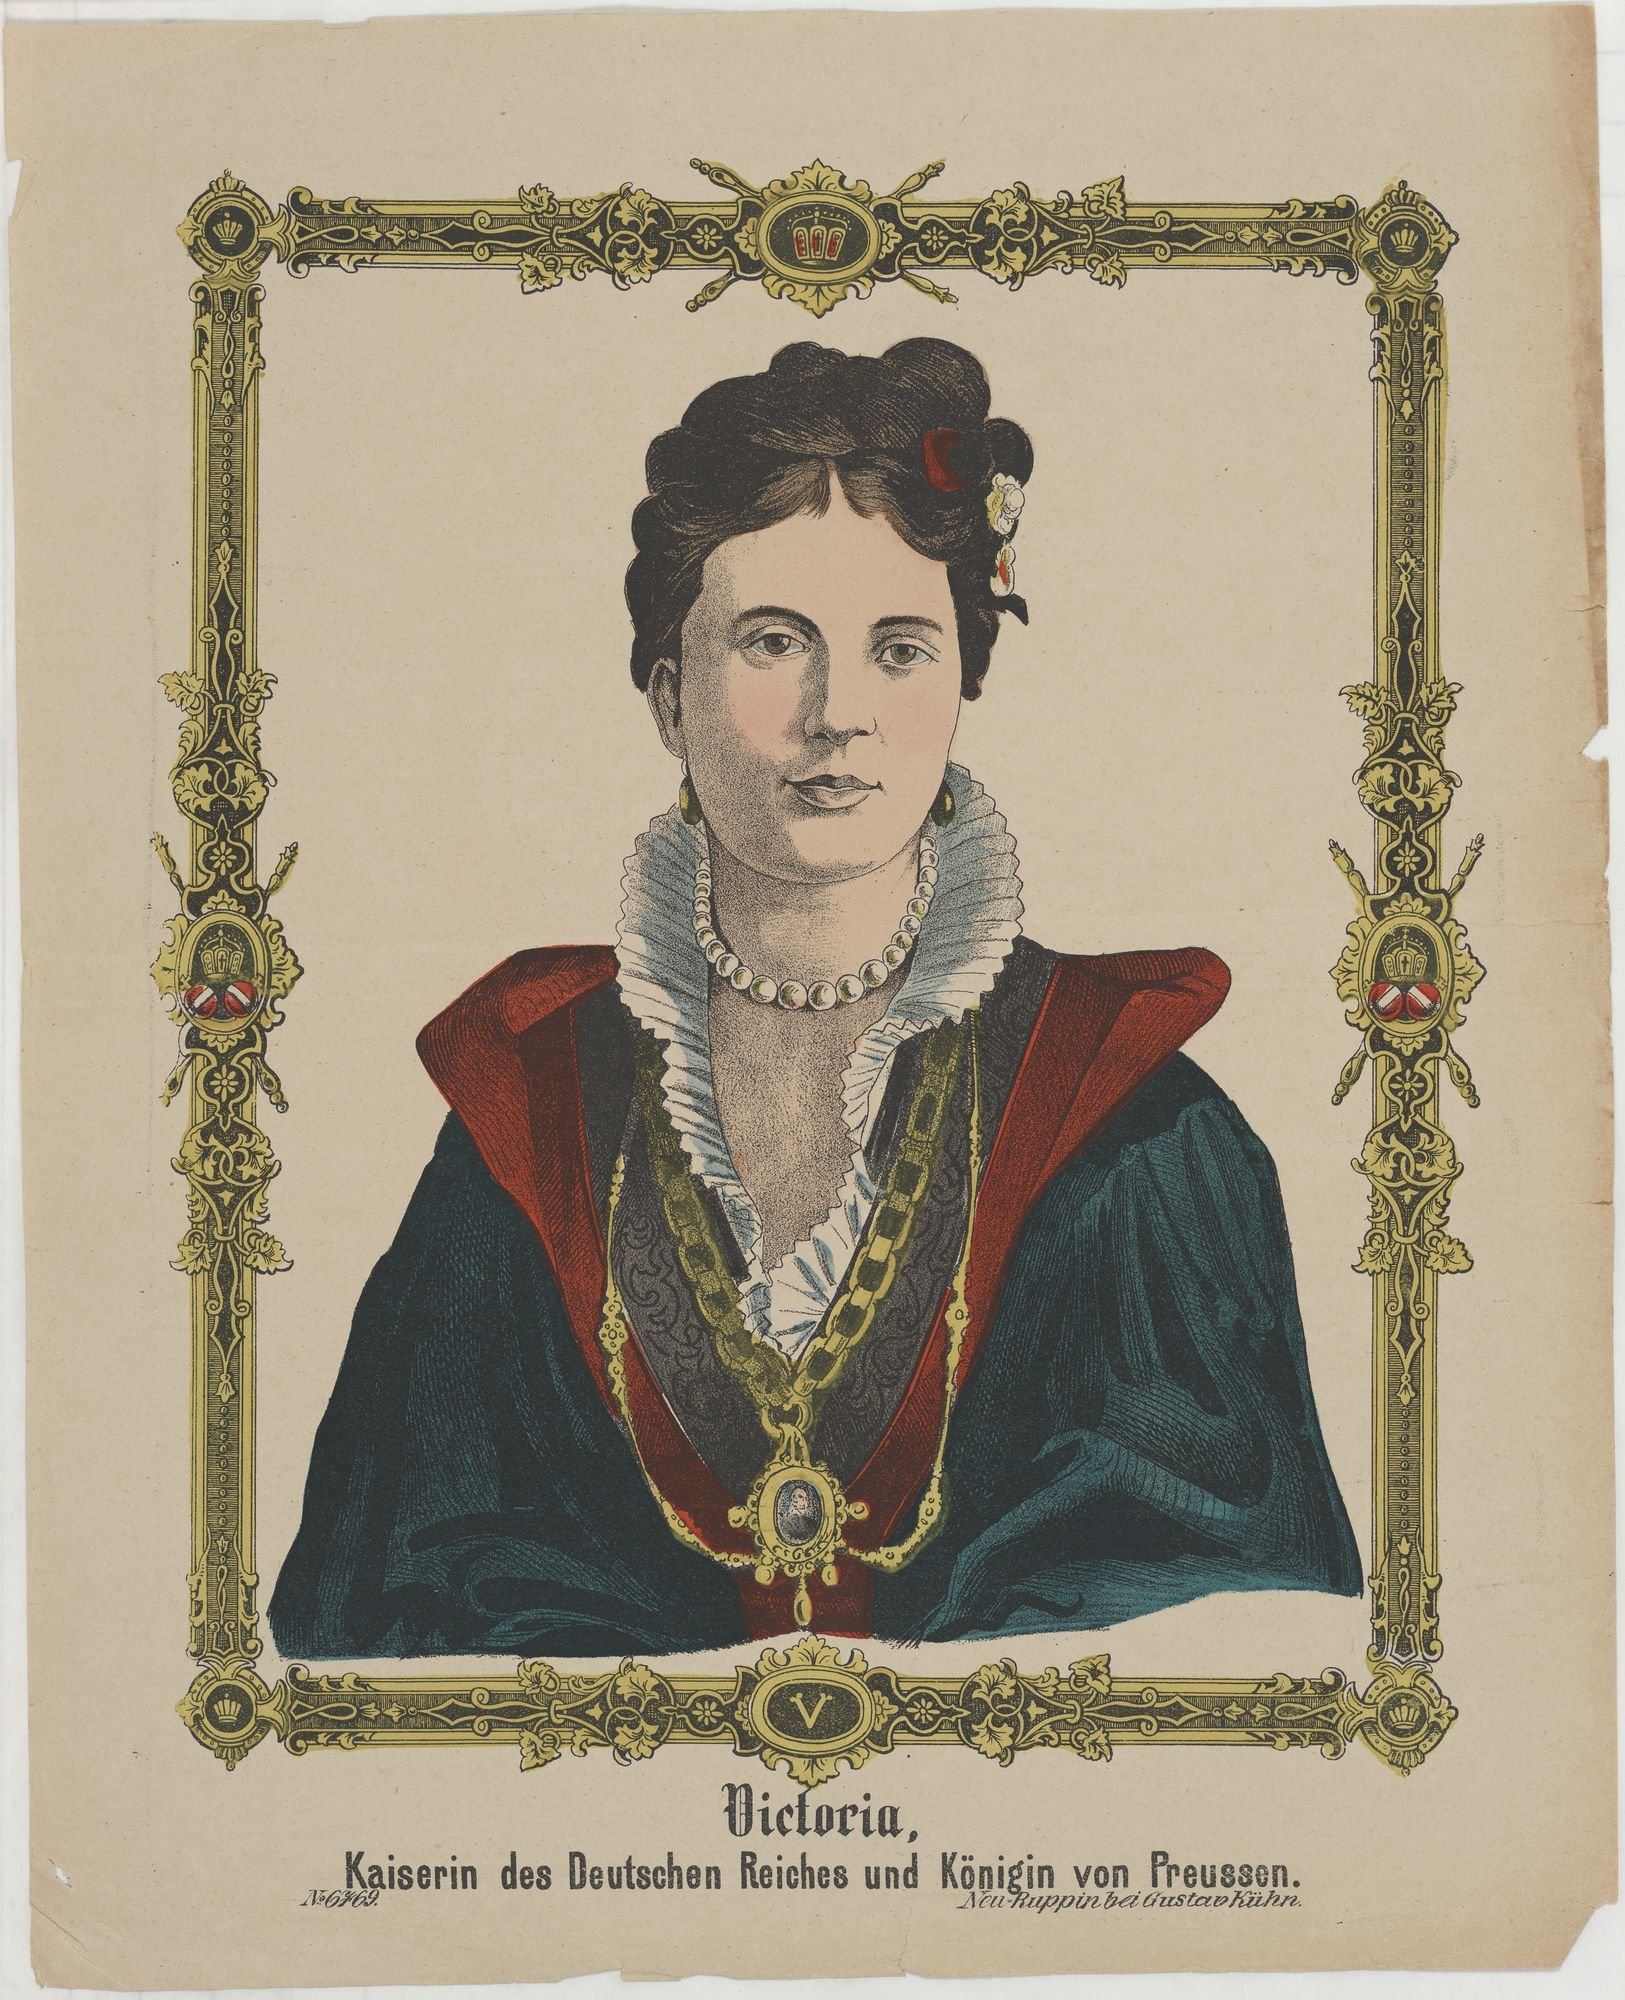 Victoria,/ Kaiserin des Deutschen Reiches und Königin von Preussen. (Kulturstiftung Sachsen-Anhalt Public Domain Mark)